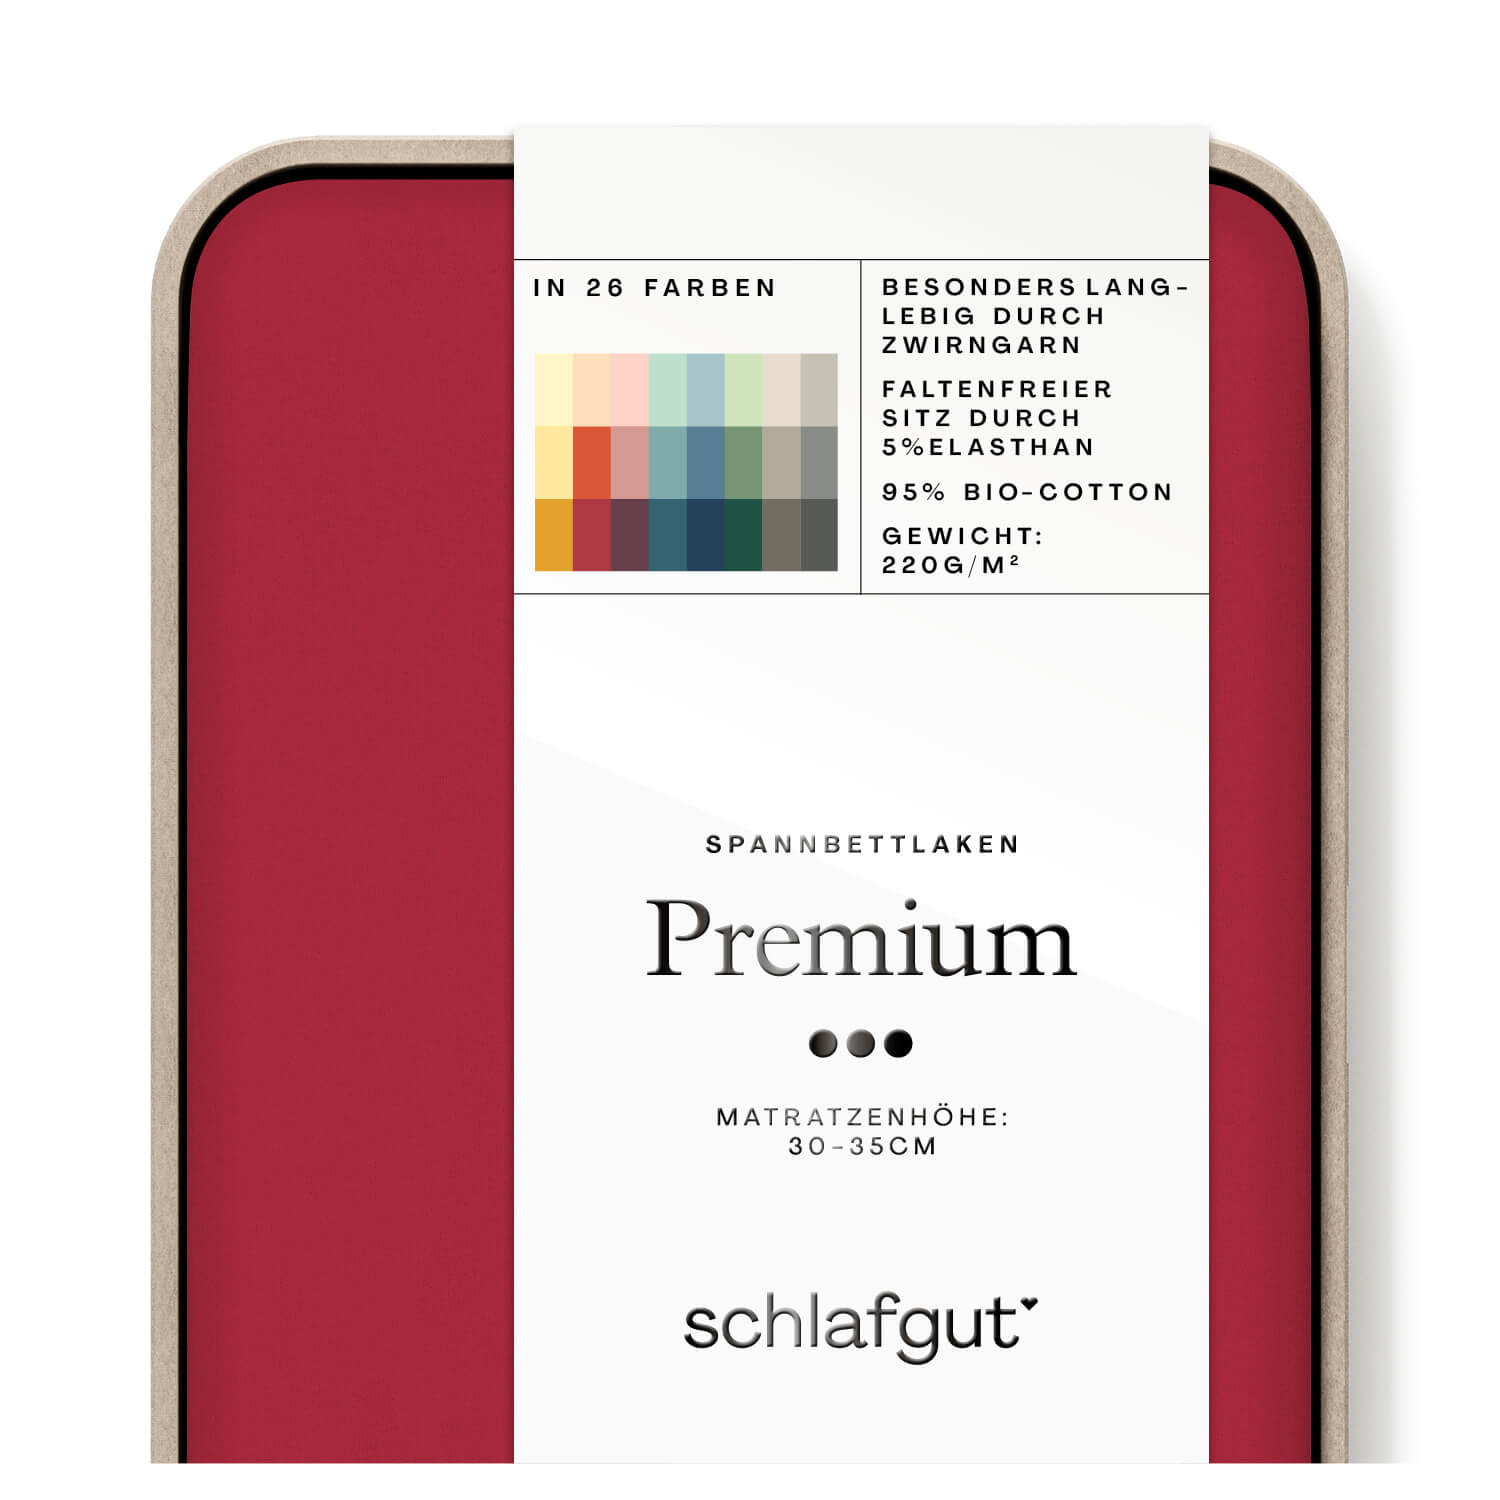 Das Produktbild vom Spannbettlaken der Reihe Premium in Farbe red deep von Schlafgut